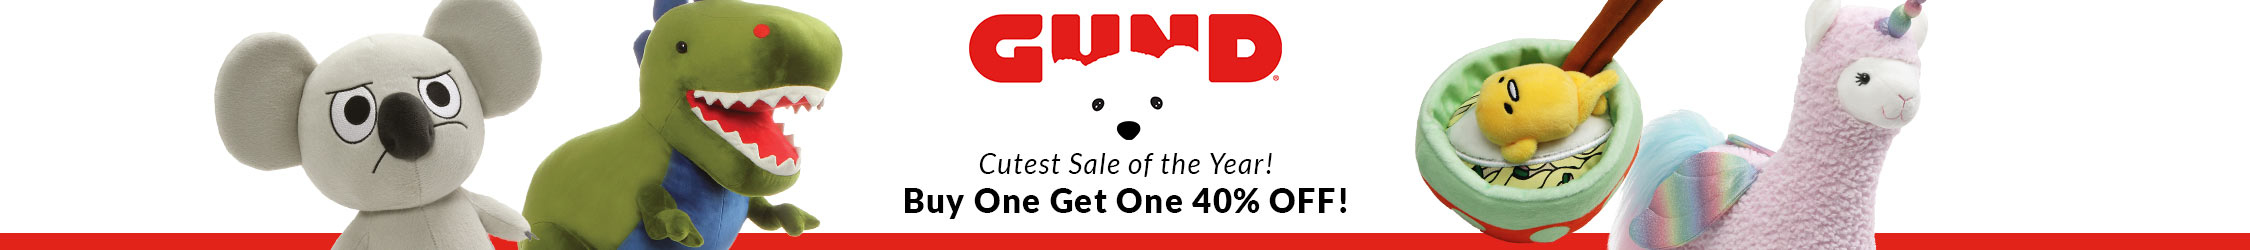 Cutest Sale of the Year BOGO 40% Gund